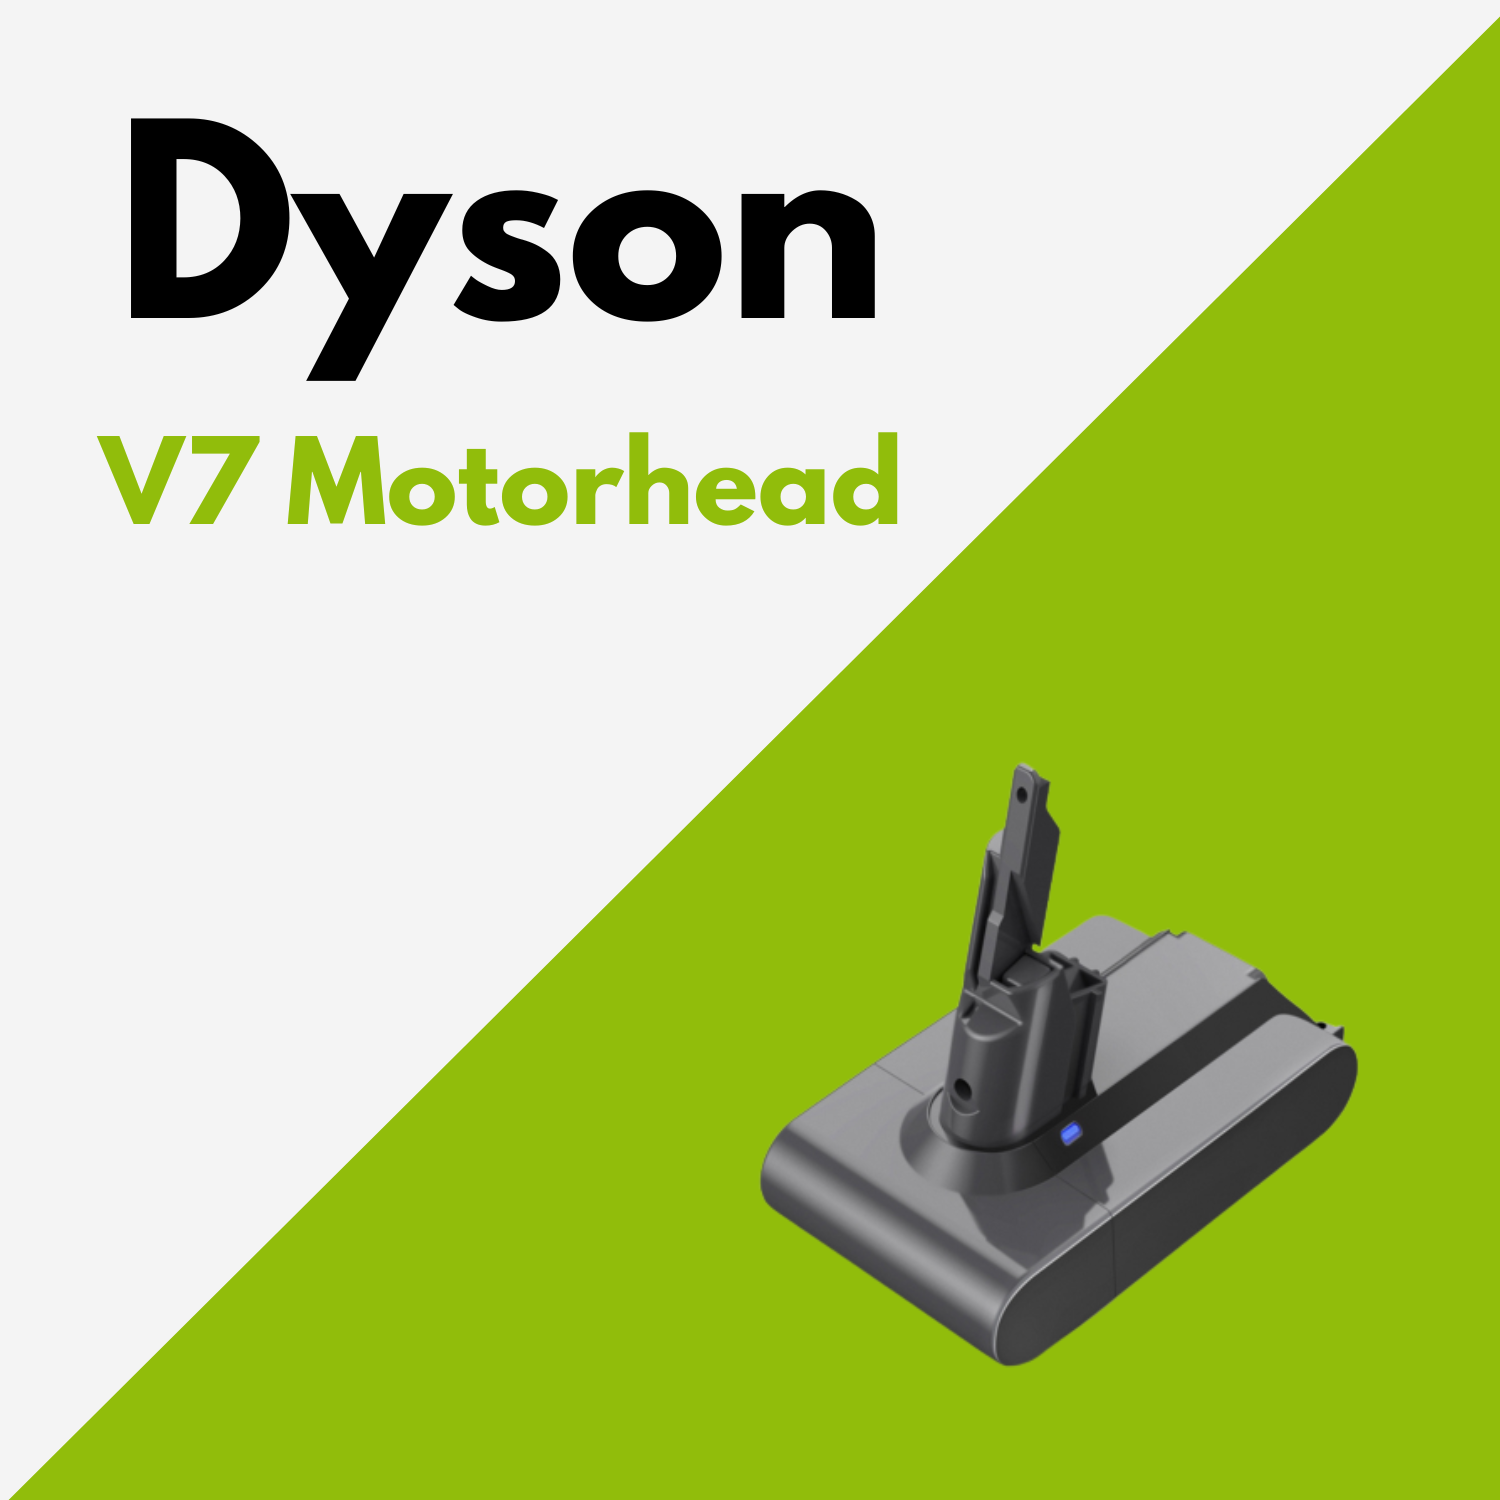 Batterie Dyson V7 Motorhead au meilleur prix ! [PROMO]